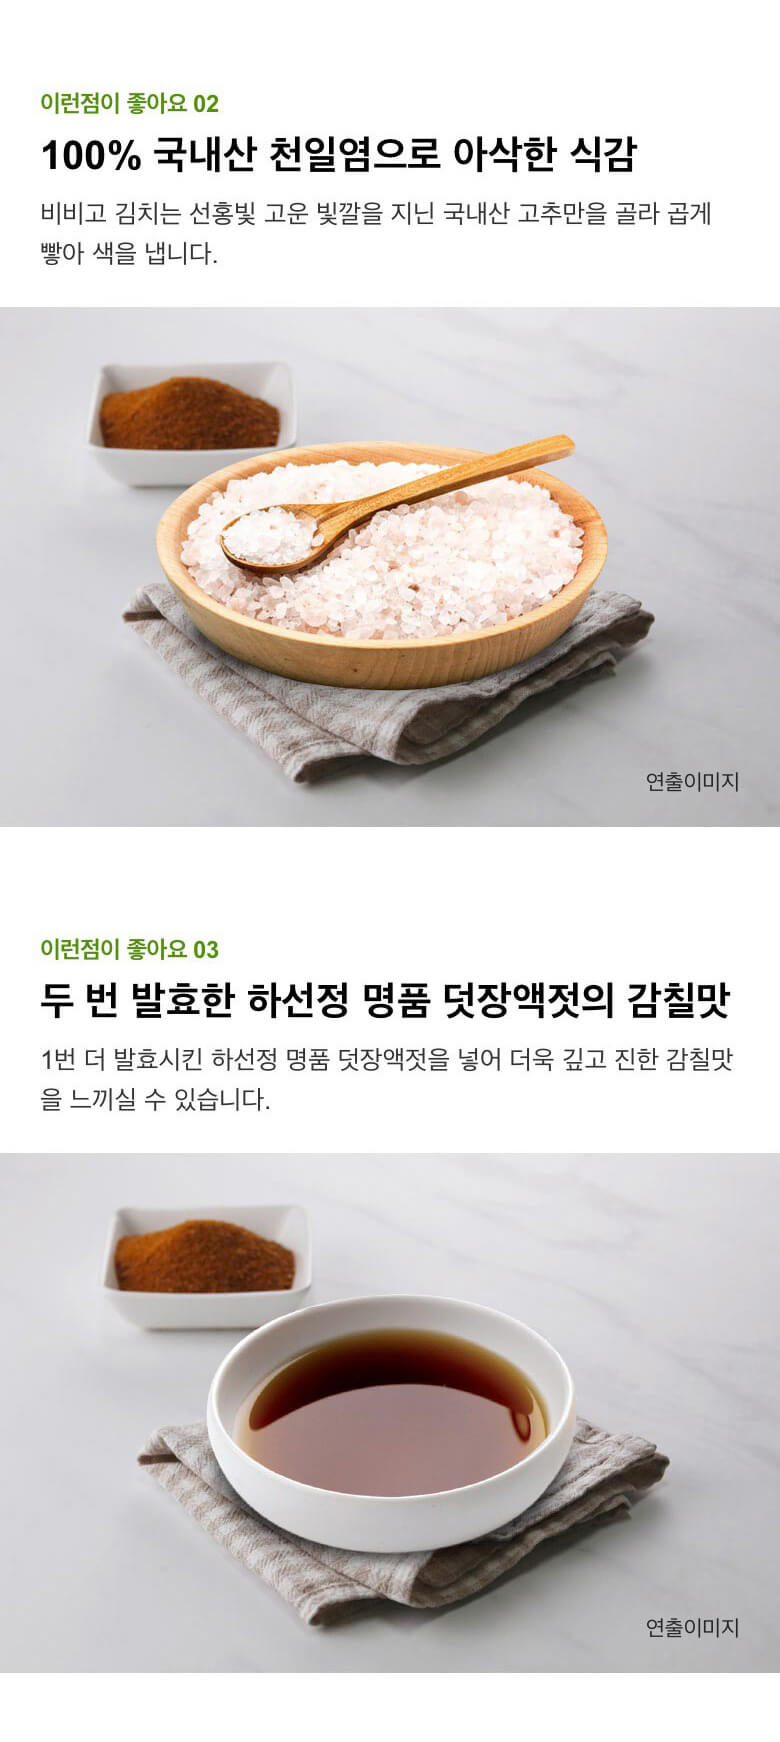 韓國食品-[CJ] 비비고 깍두기김치 450g